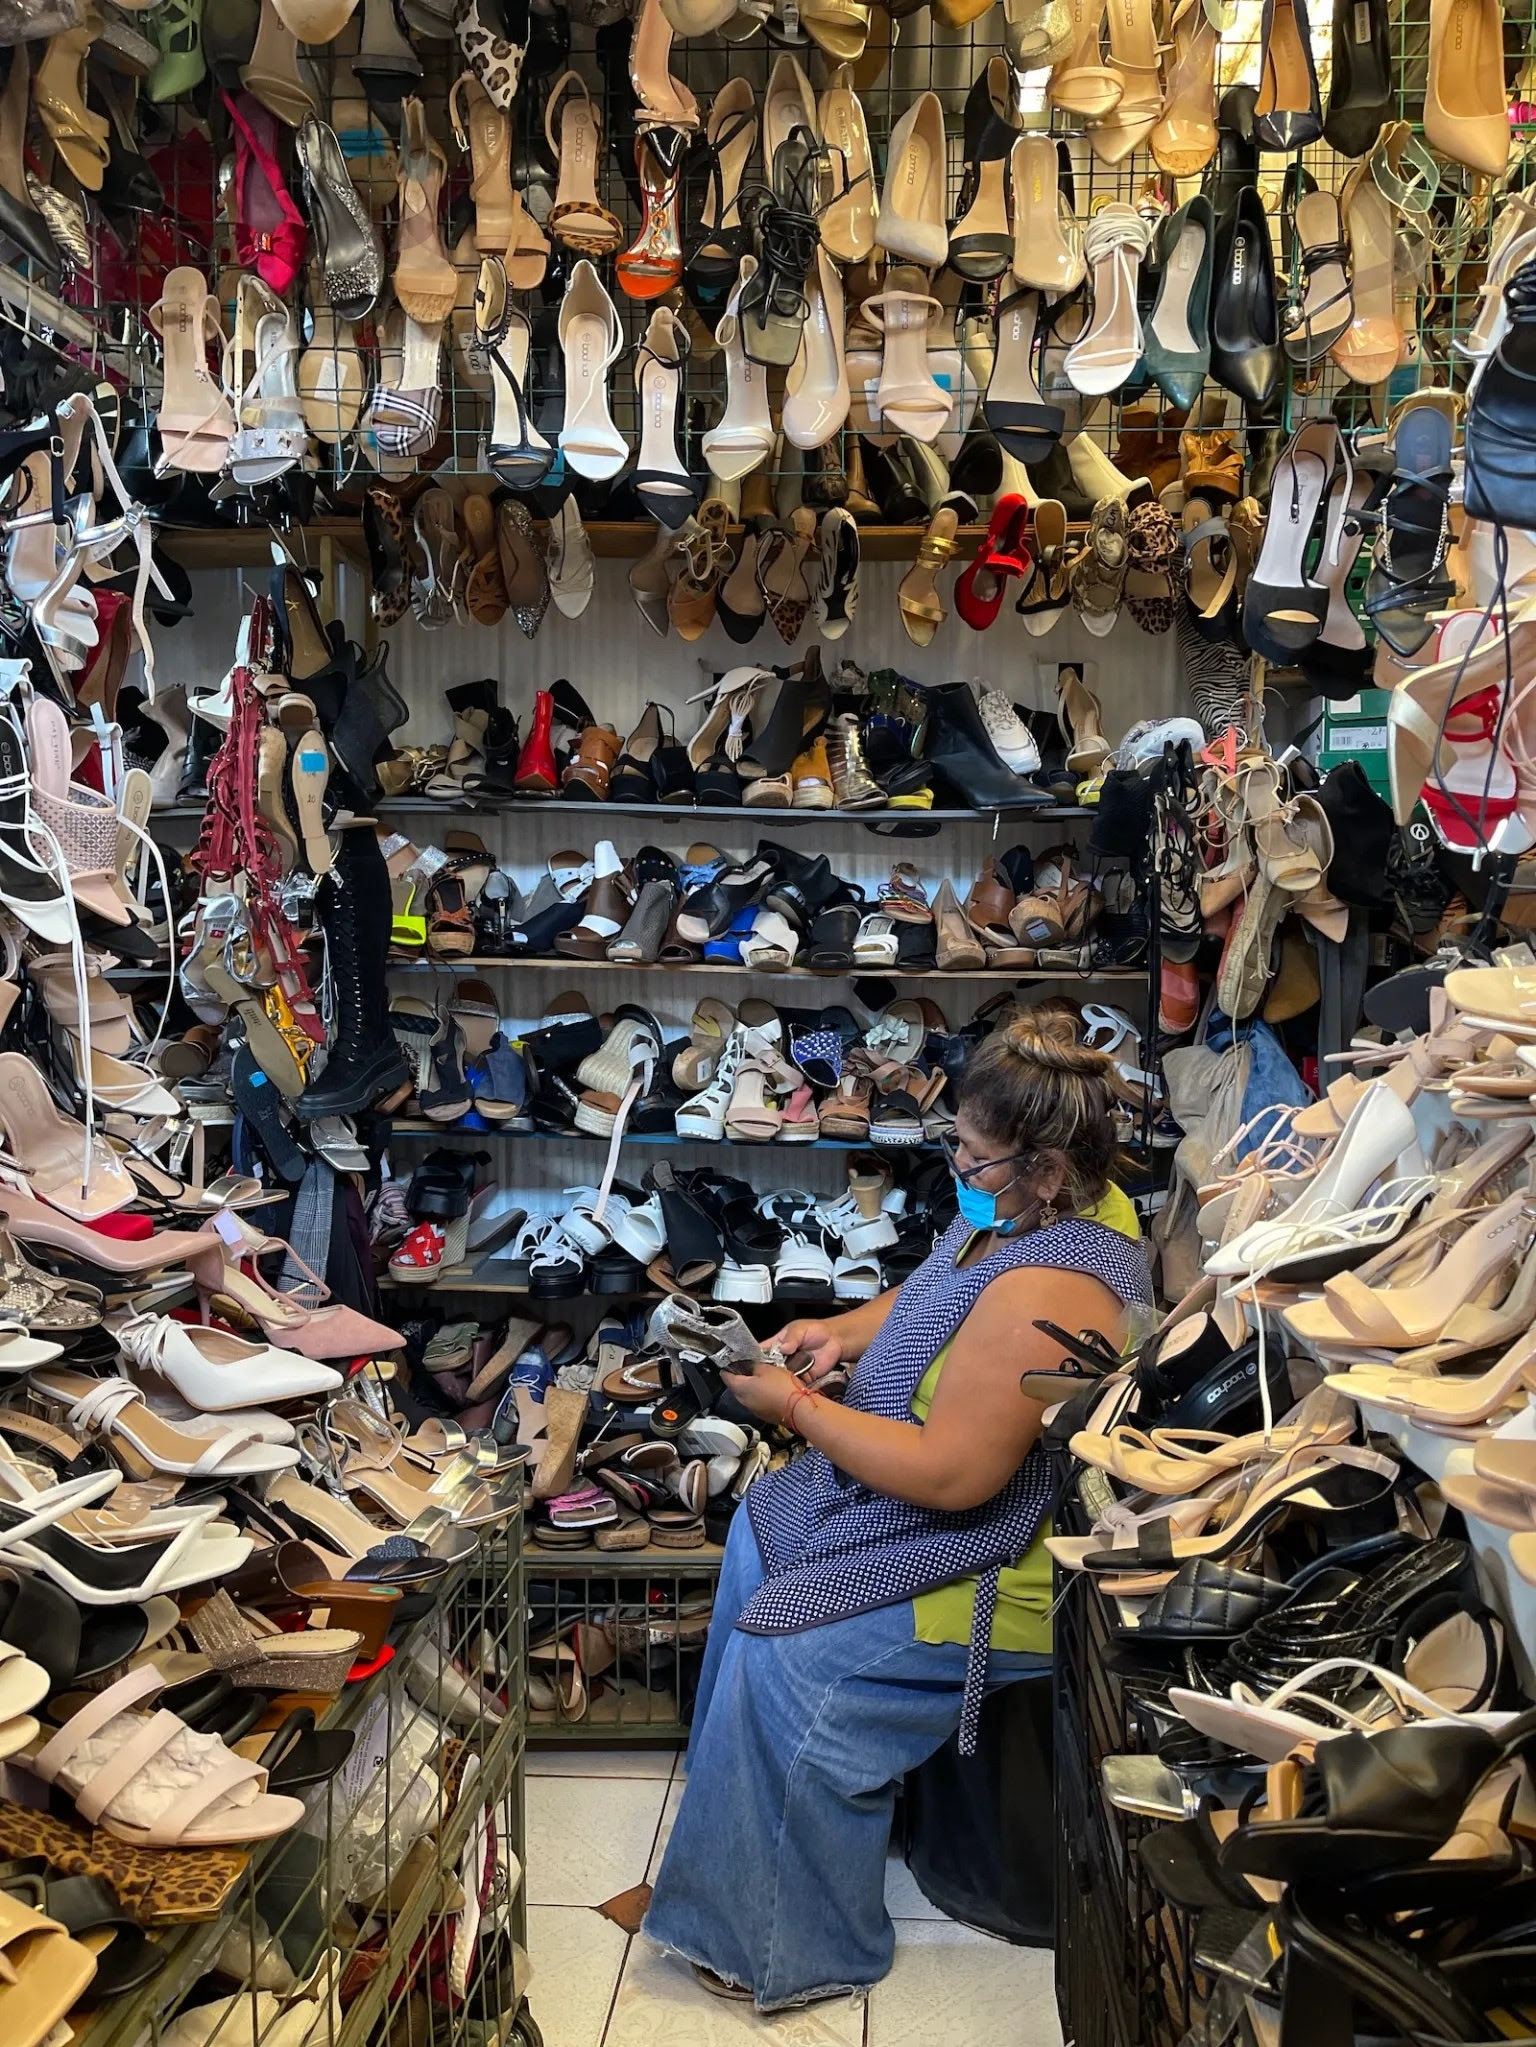 a shoe vendor